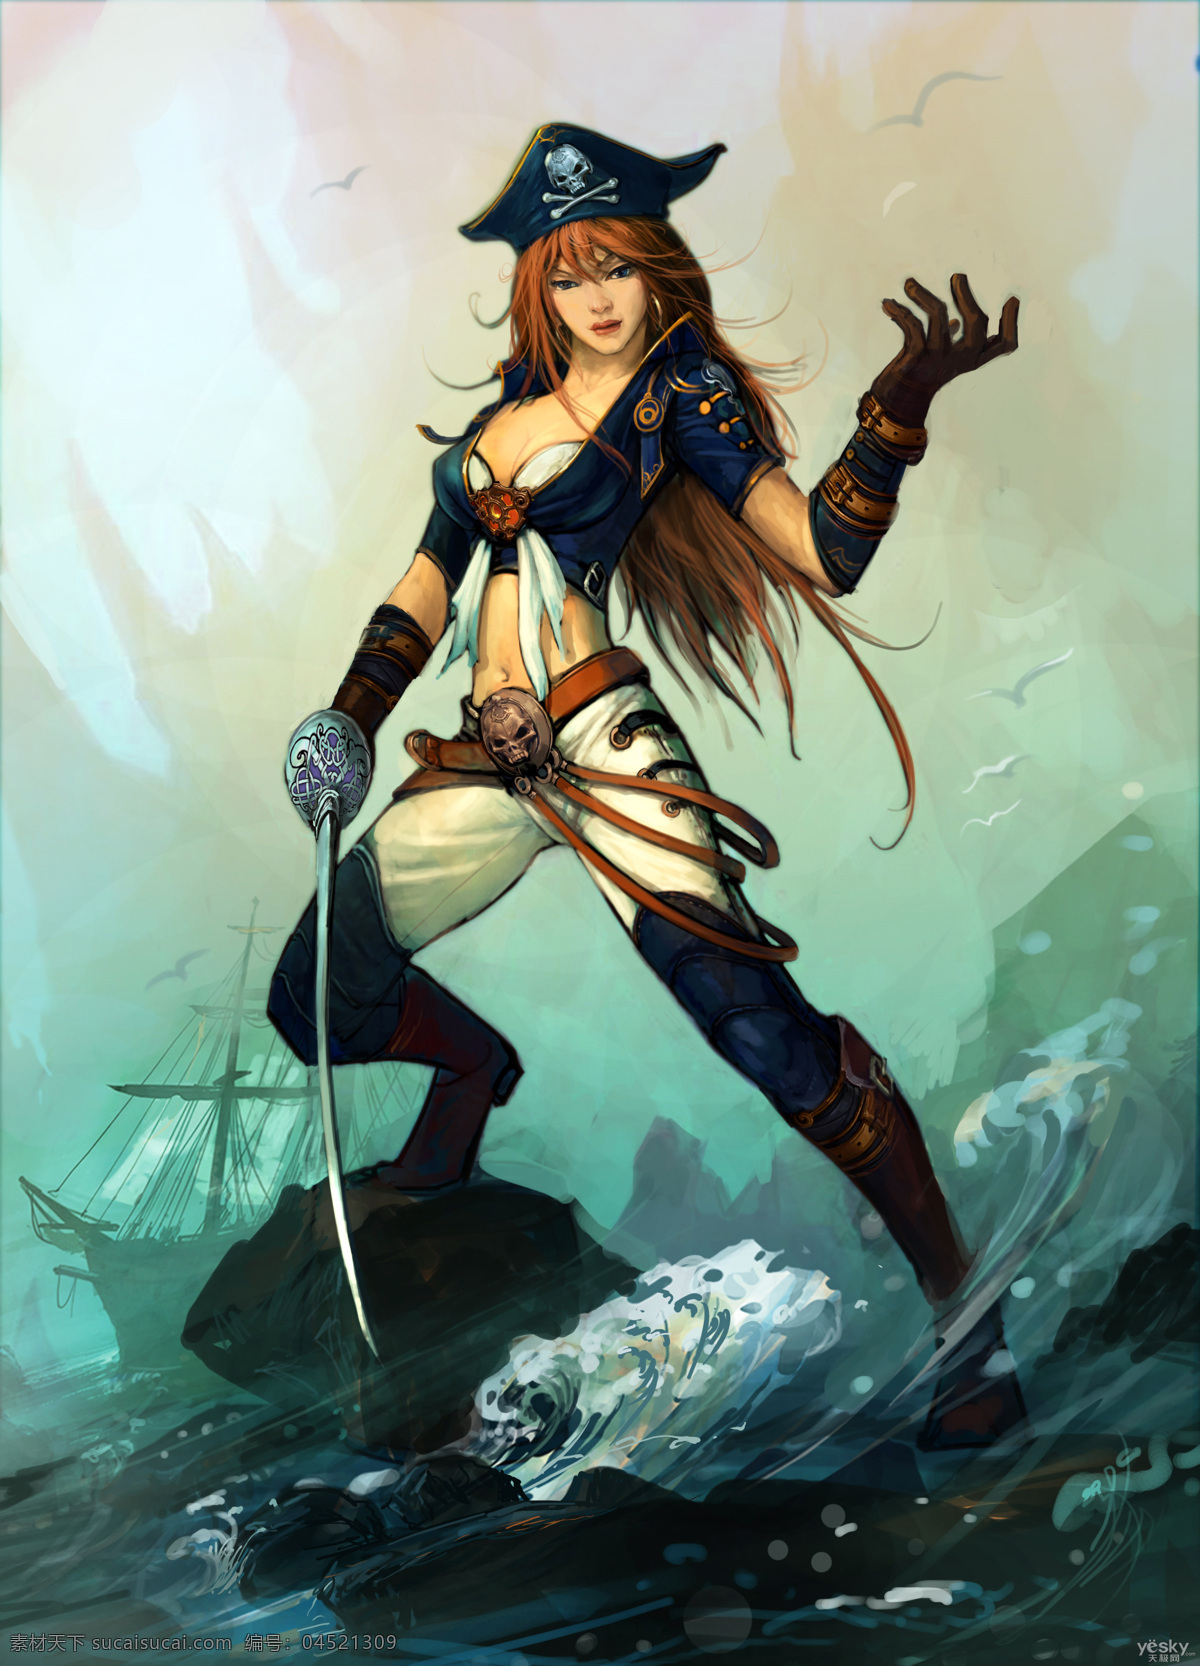 女海盗 美女 远洋 大海 航海 海盗 魔法 梦幻 魔幻 奇幻 游戏 原画 cg 人物素材 动漫人物 动漫动画 cg人物